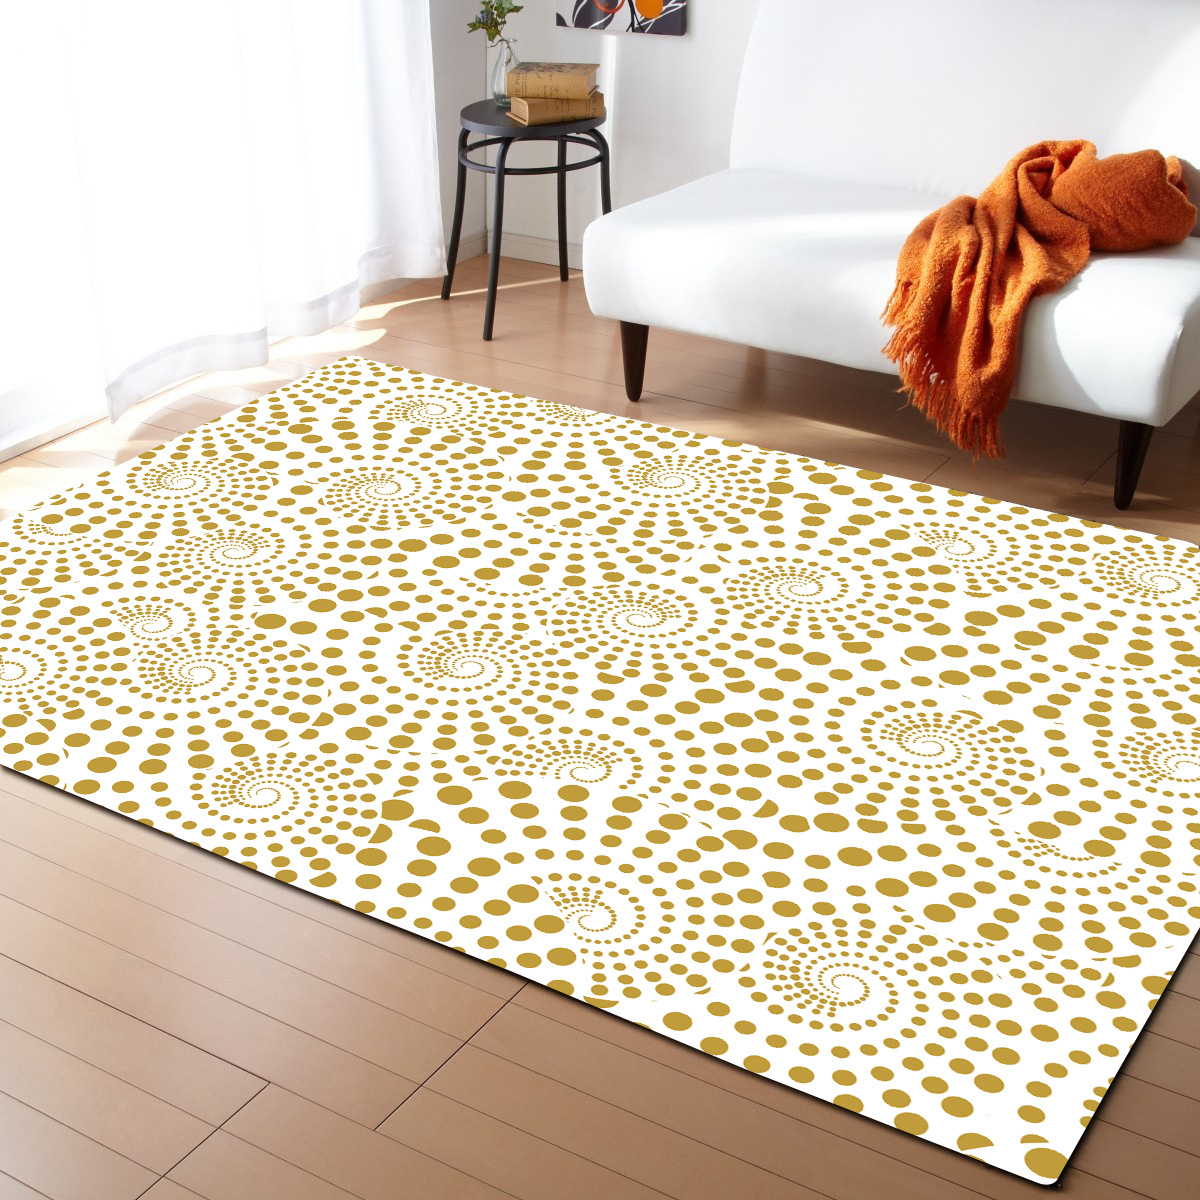 欧式客厅地毯卧室餐厅地垫ebay亚马逊货源一件代发图案尺寸